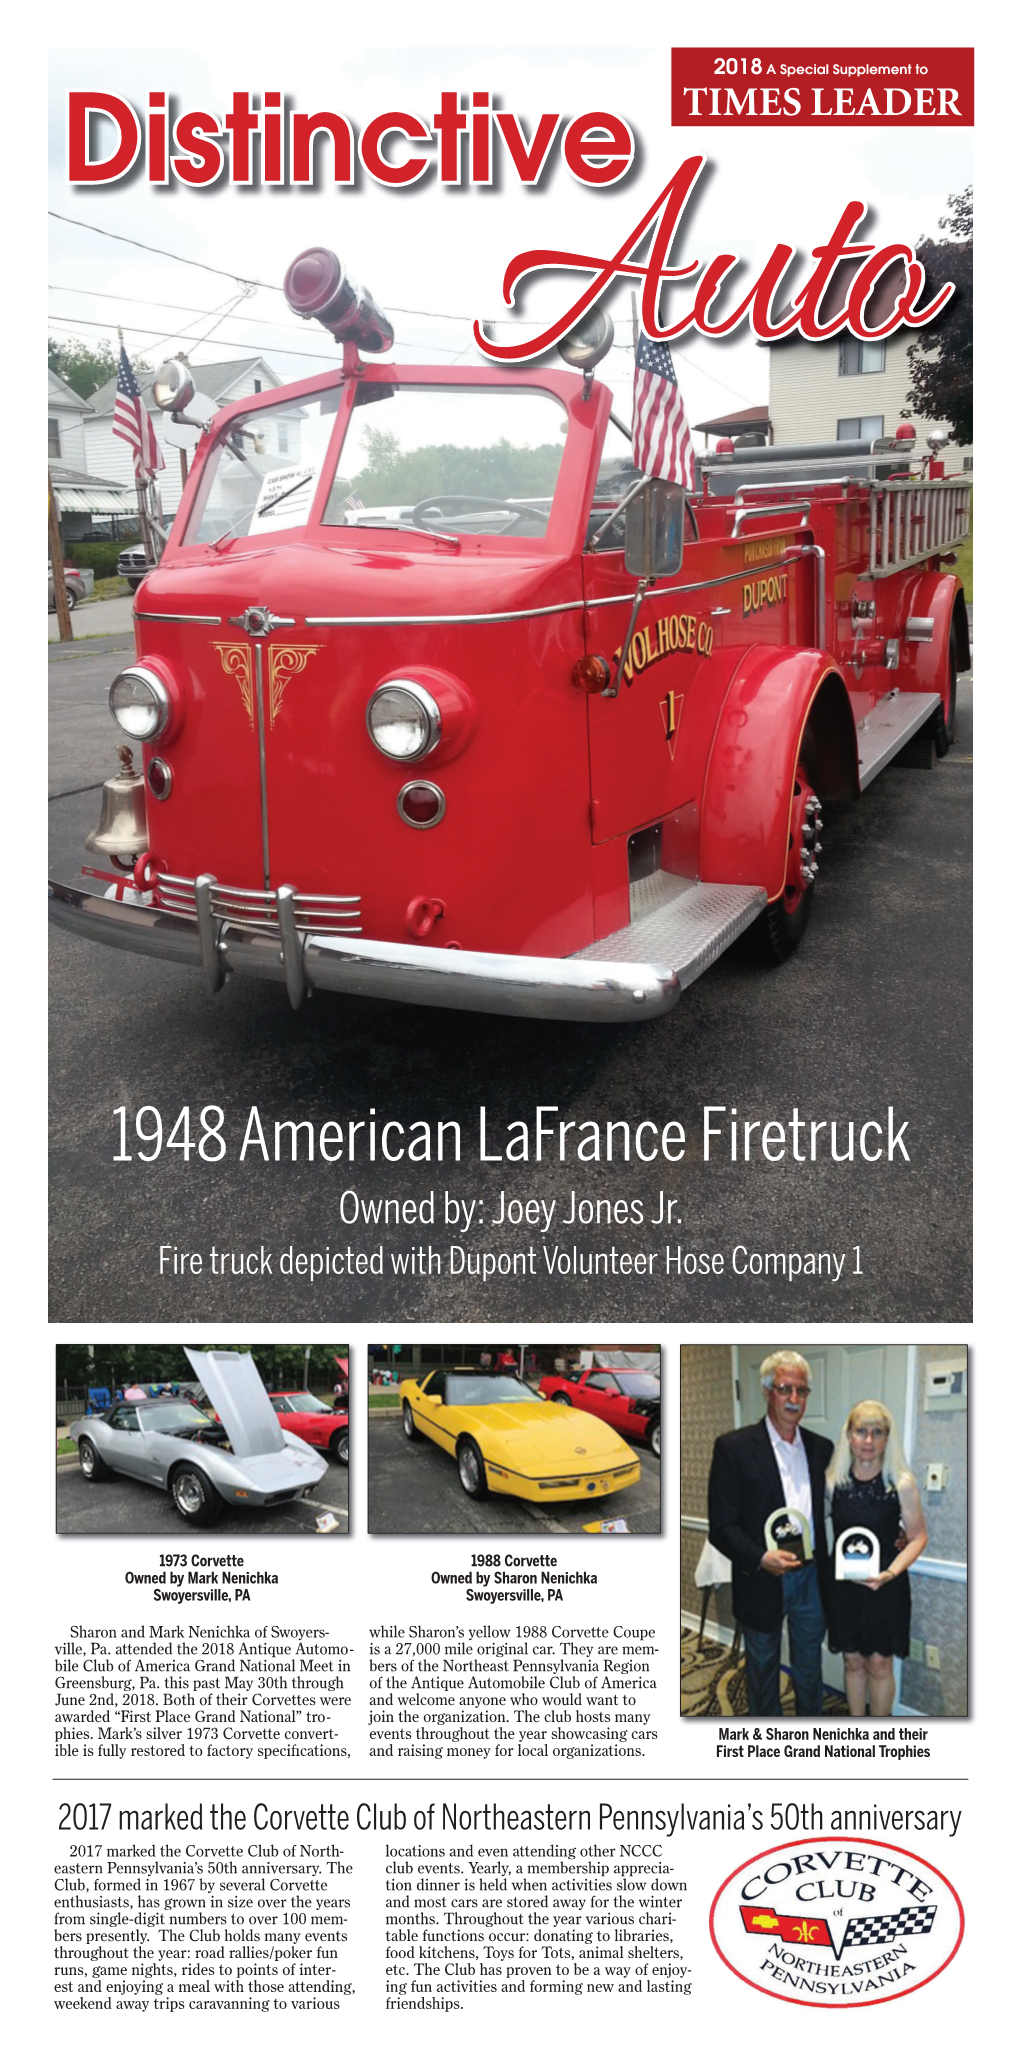 1948 American Lafrance Firetruck Owned By: Joey Jones Jr